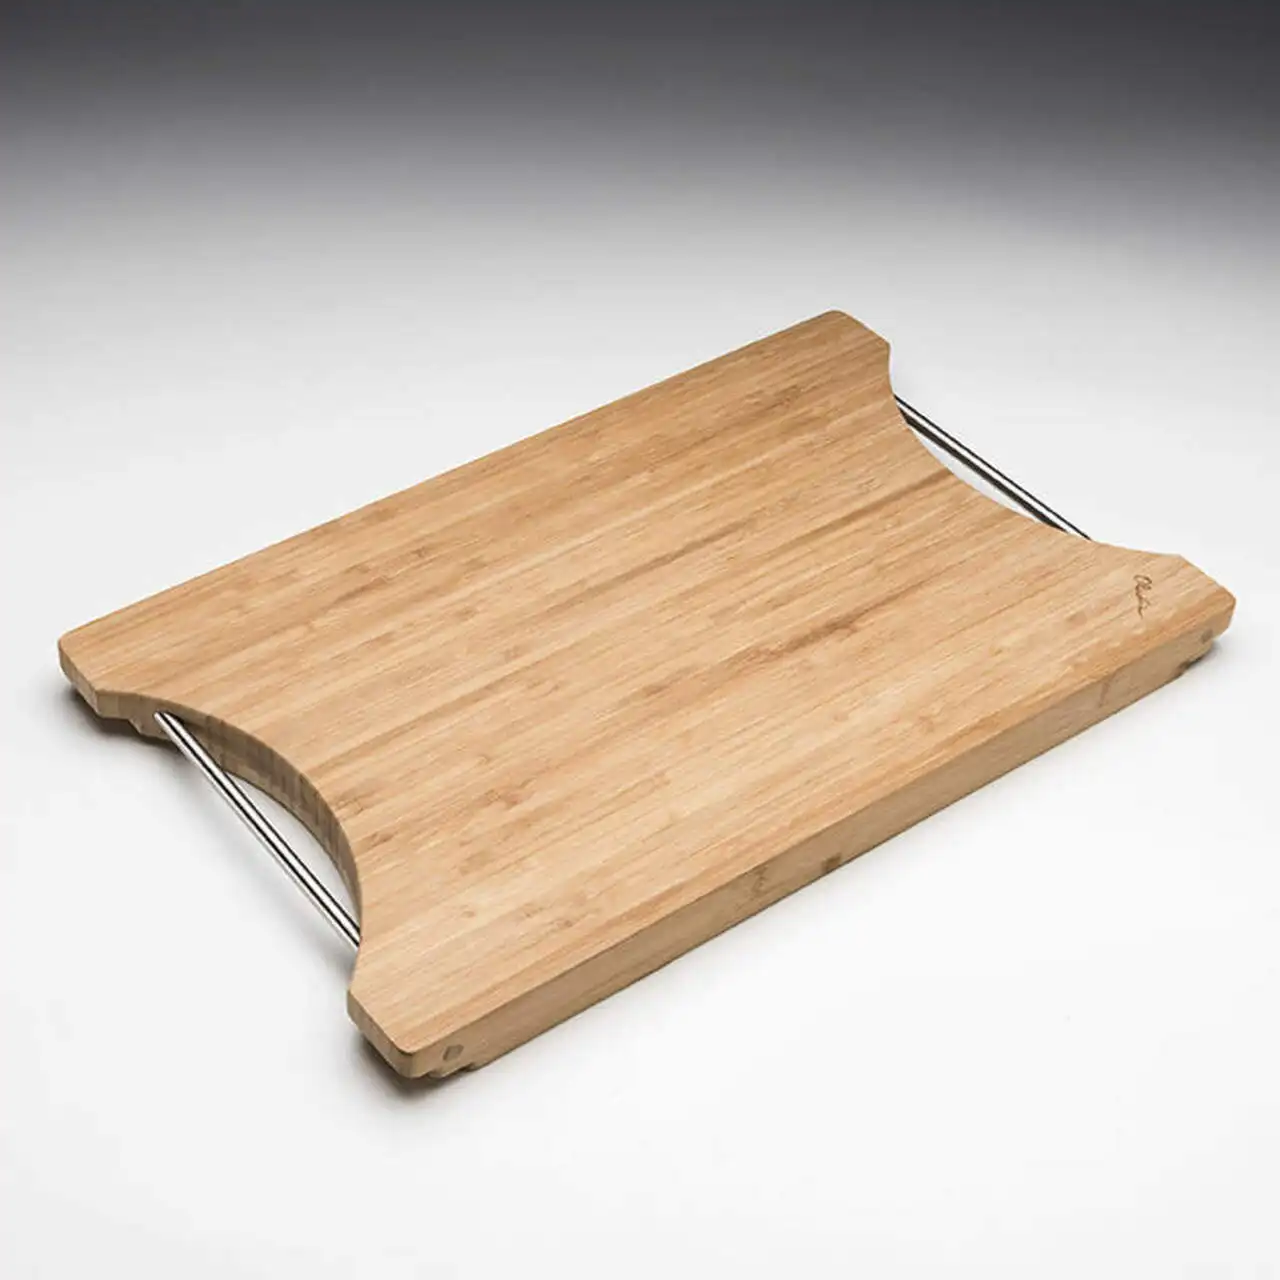 Planche à découper en bois et caoutchouc, planche à découper en bambou d'acacia sanorini